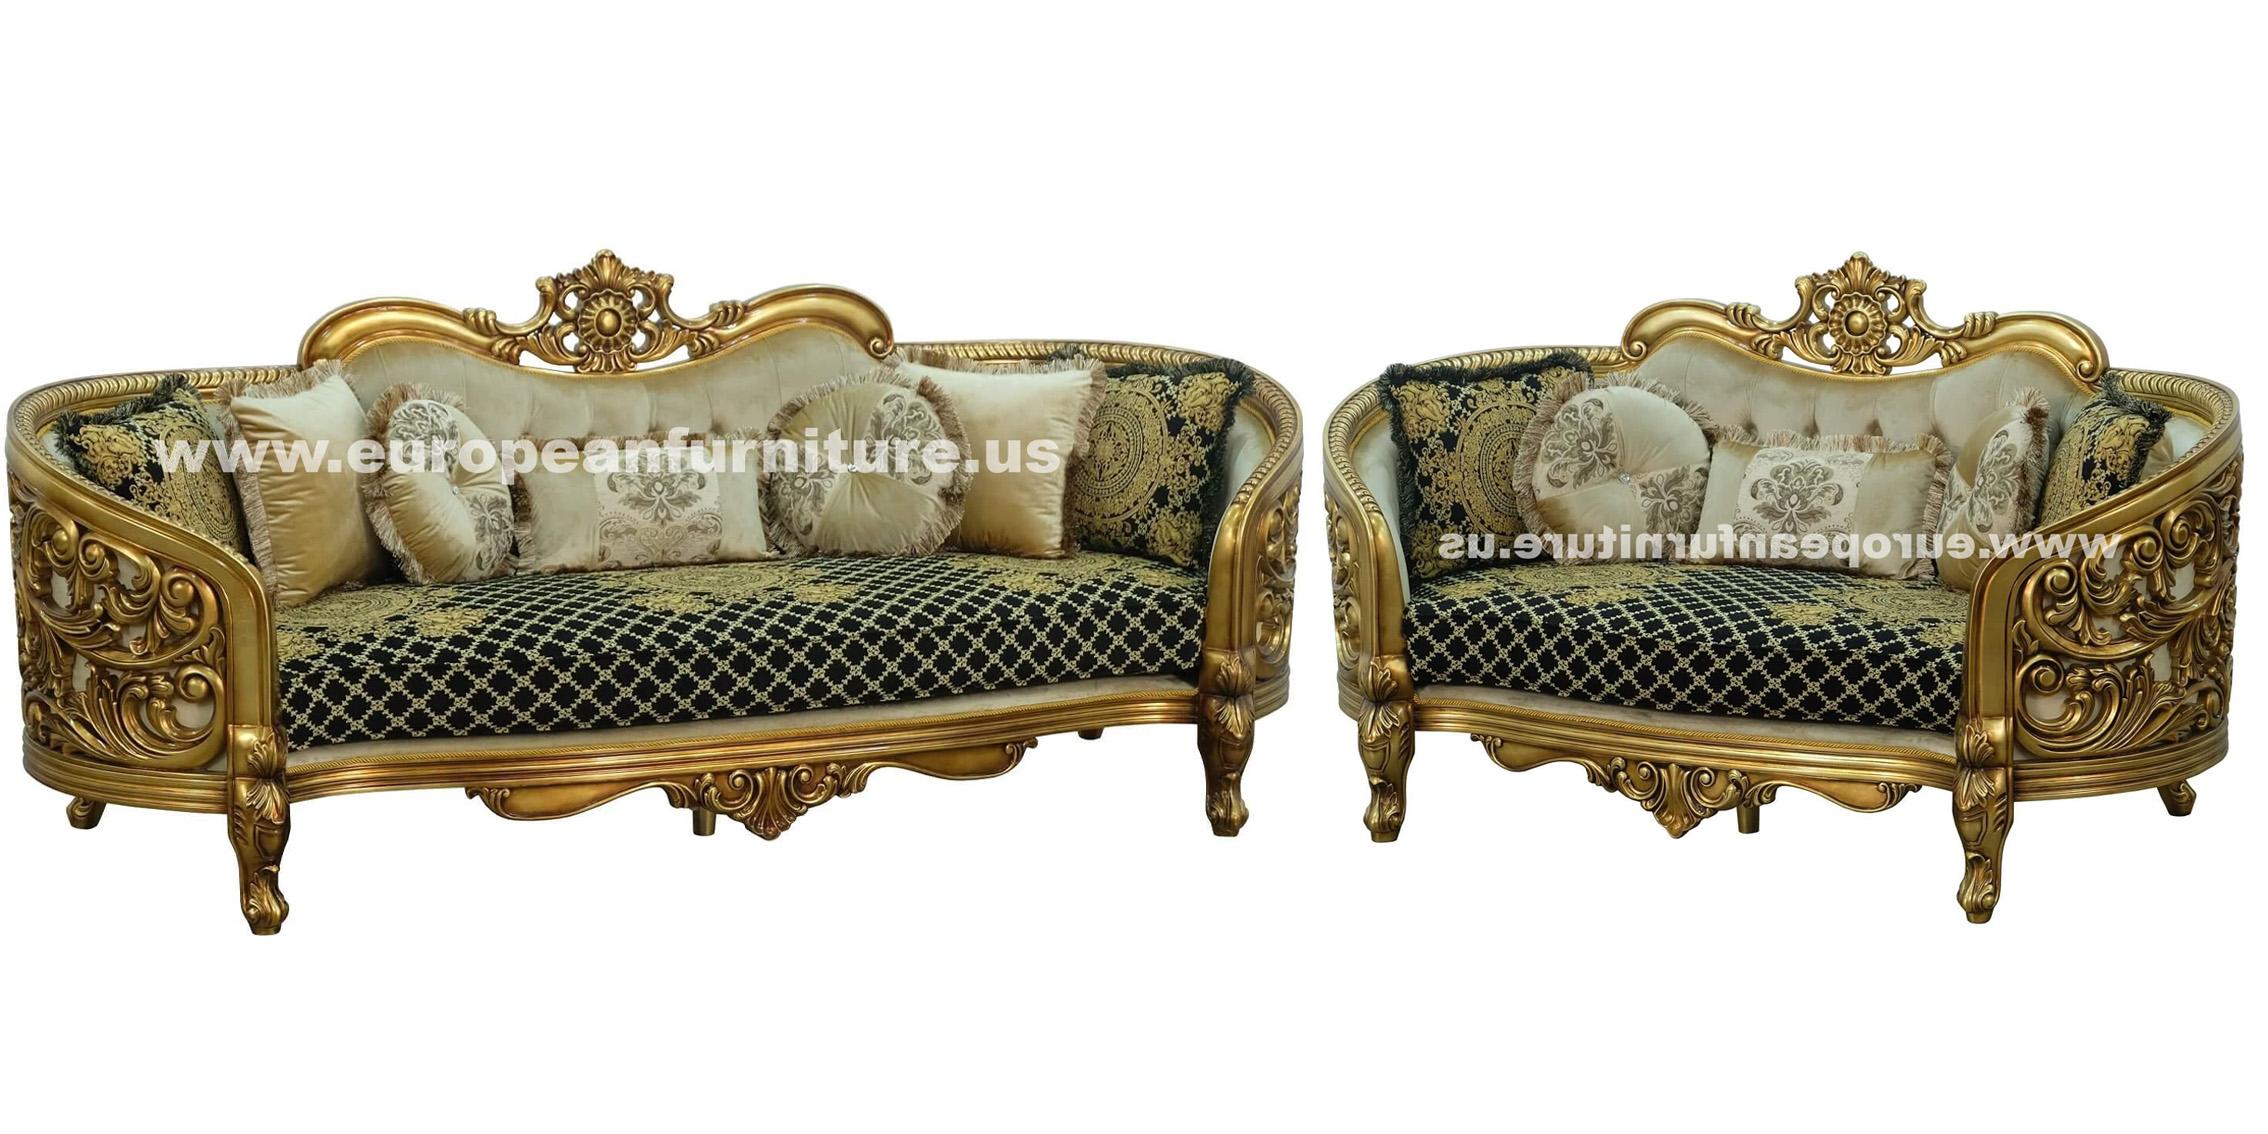 Classic, Traditional Sofa Set BELLAGIO 30018-S-Set-2 in Antique, Bronze, Black Fabric